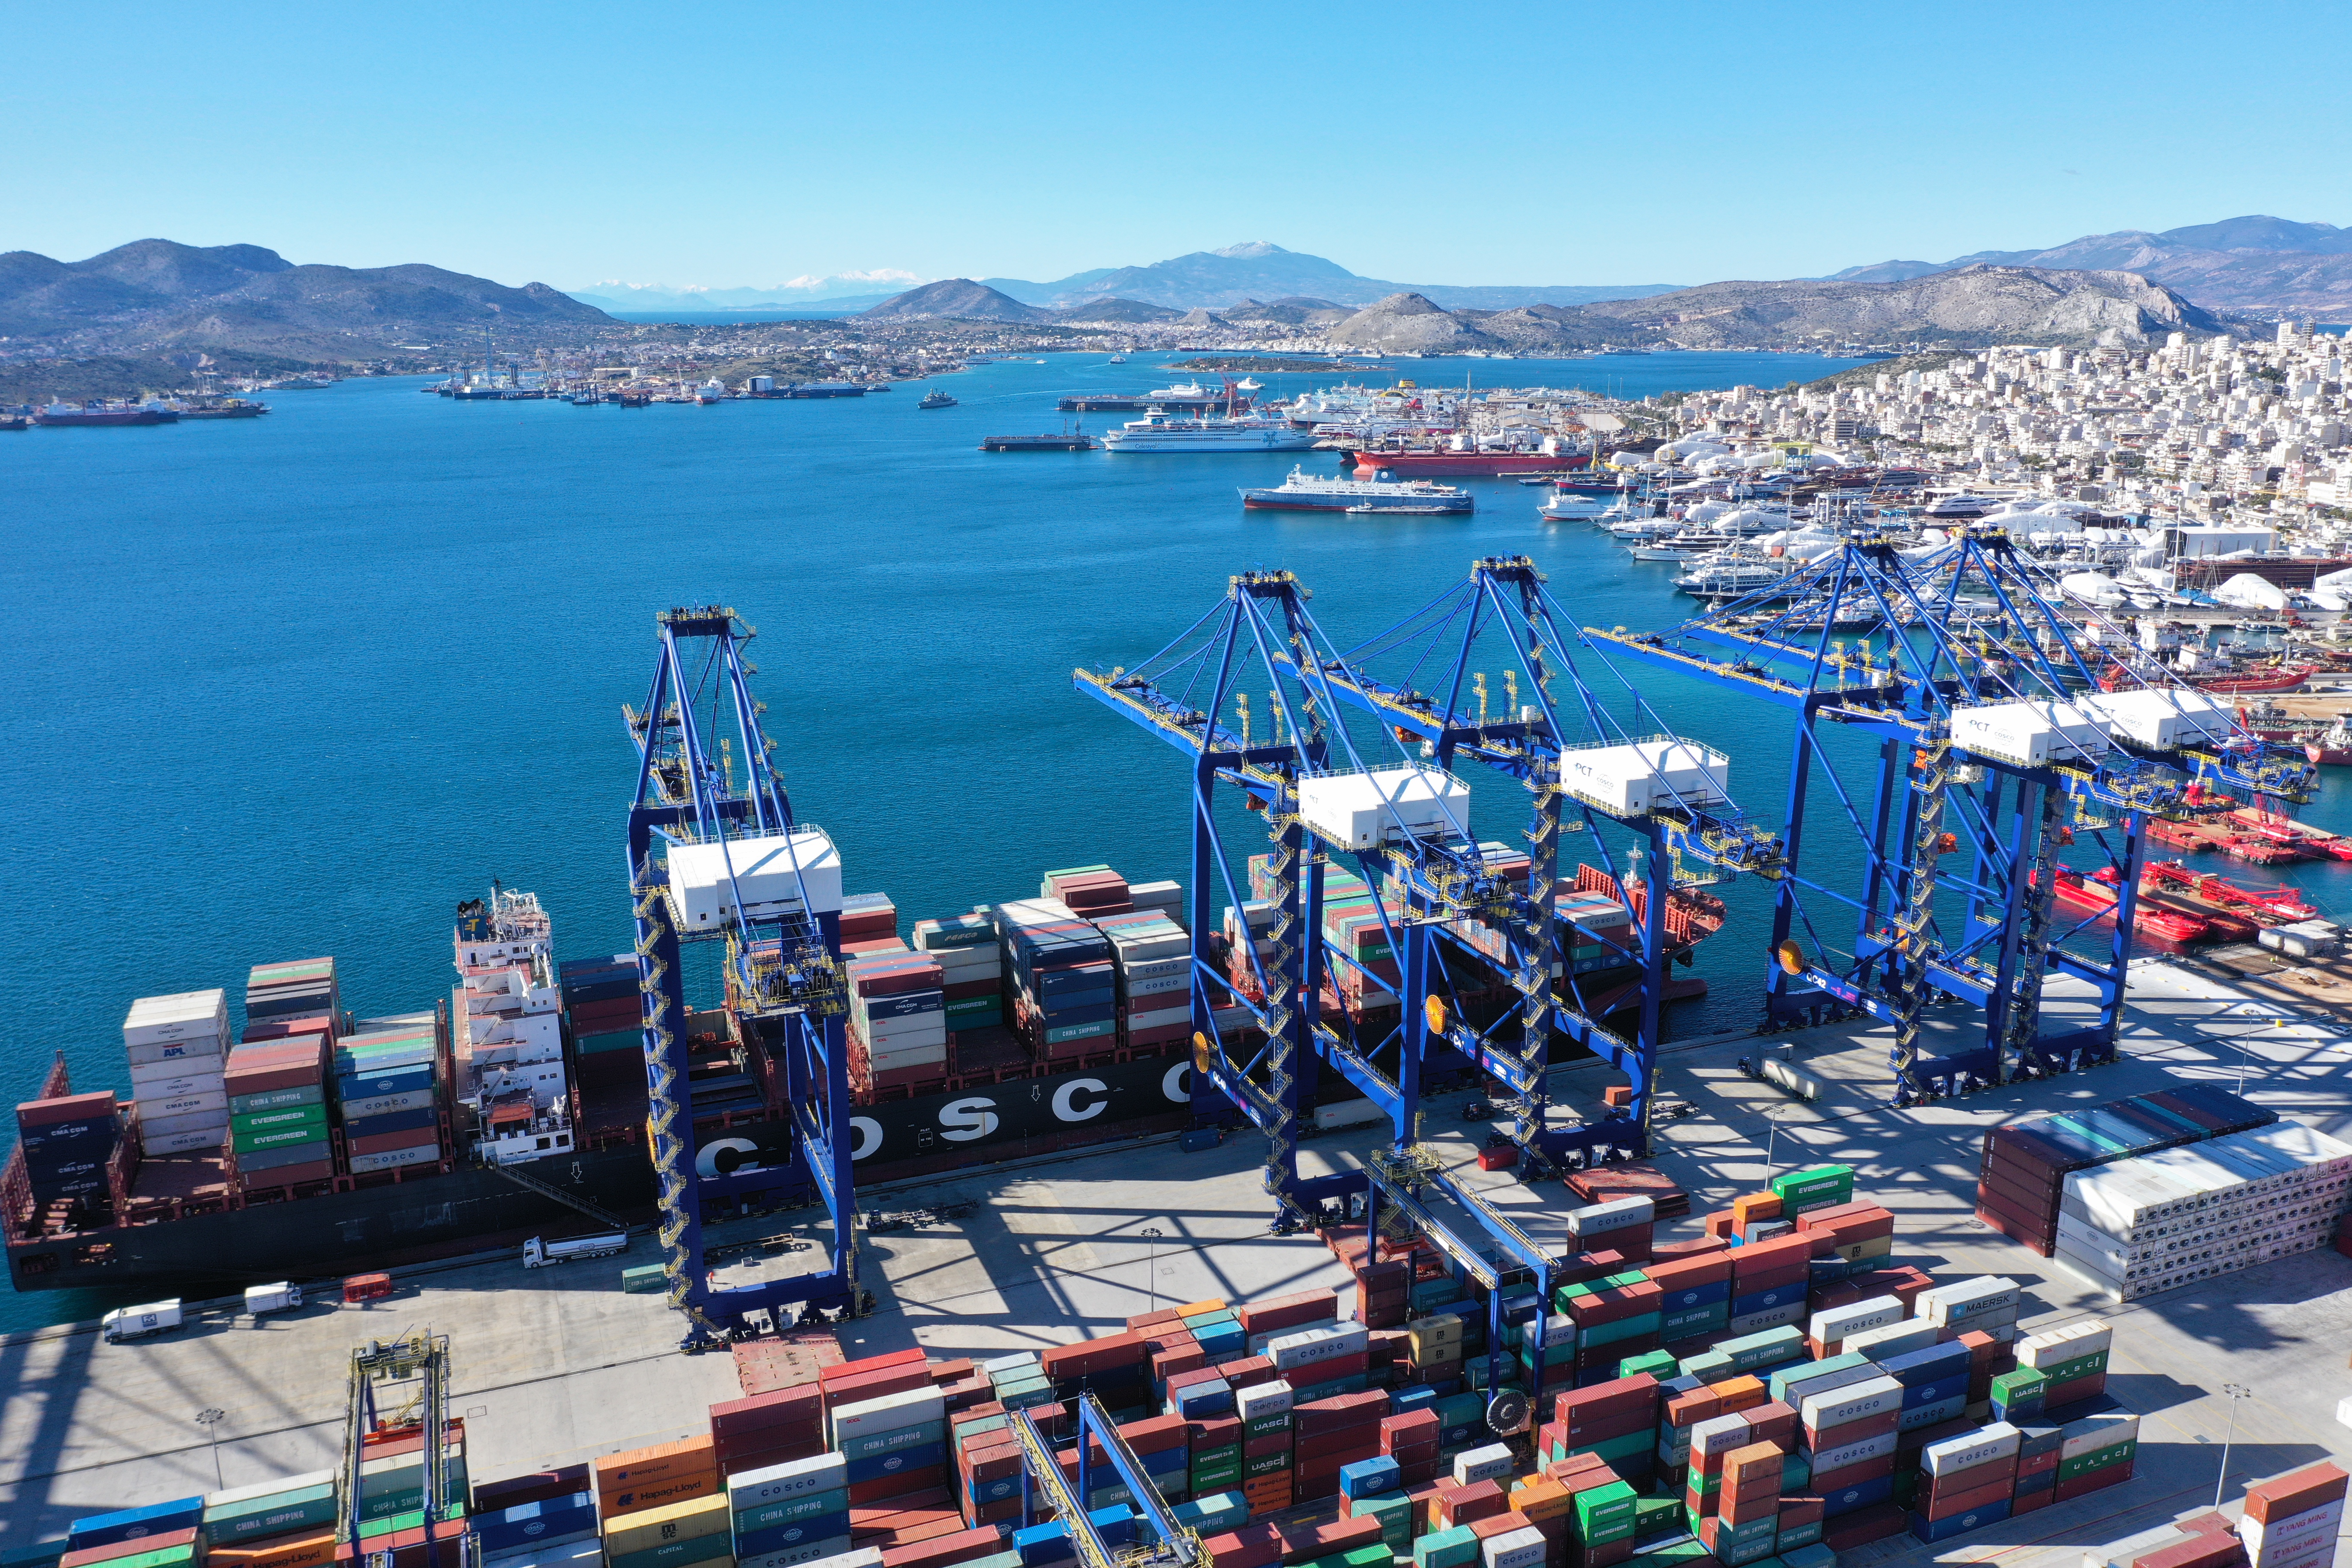 中国远洋海运集团运营的希腊最大港口比雷埃夫斯港,已成为全球发展最